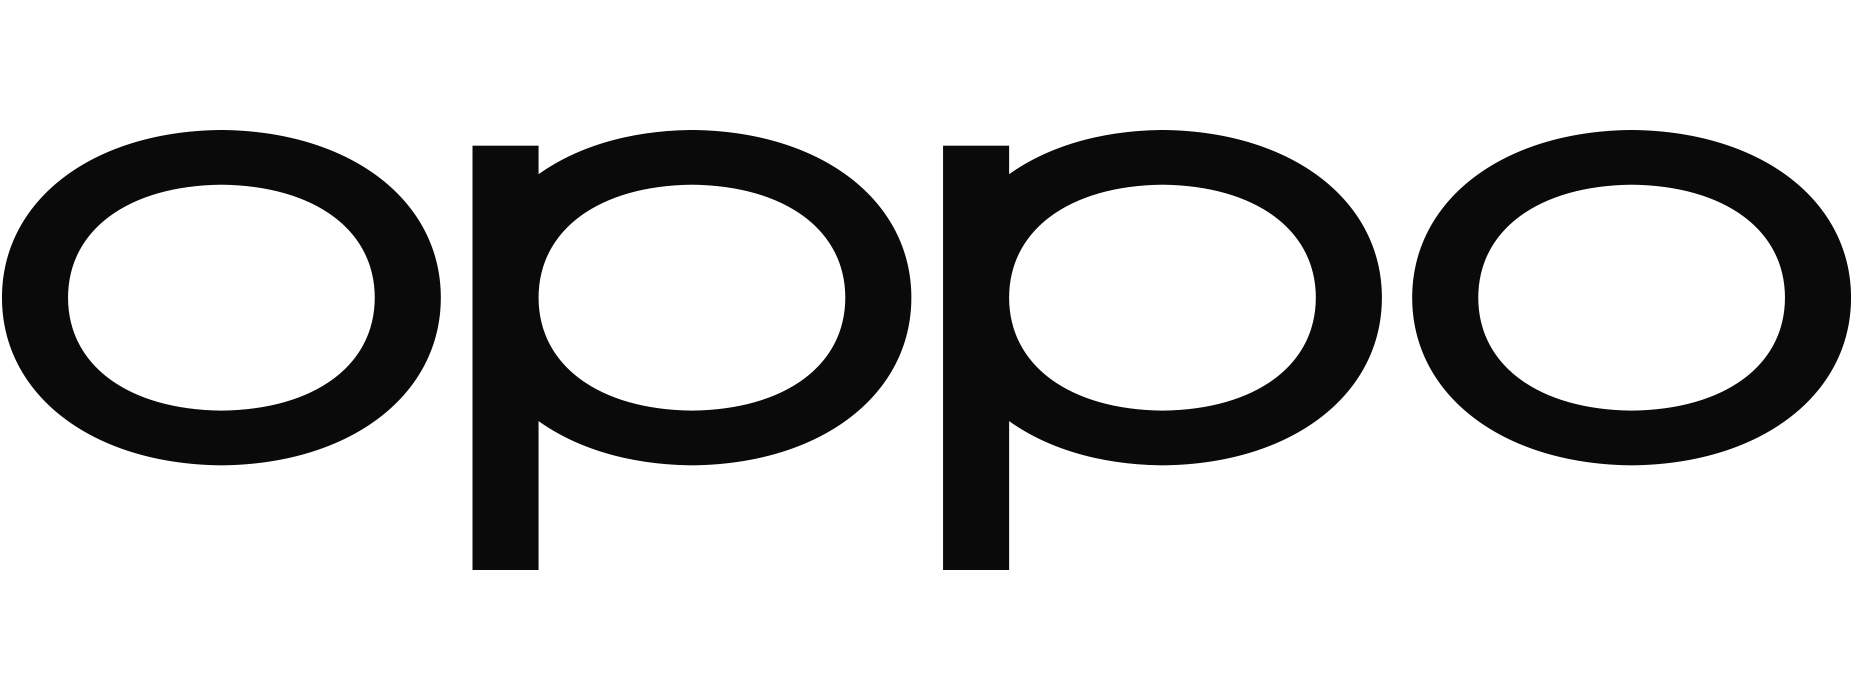 Oppo Logo PNG - 175047